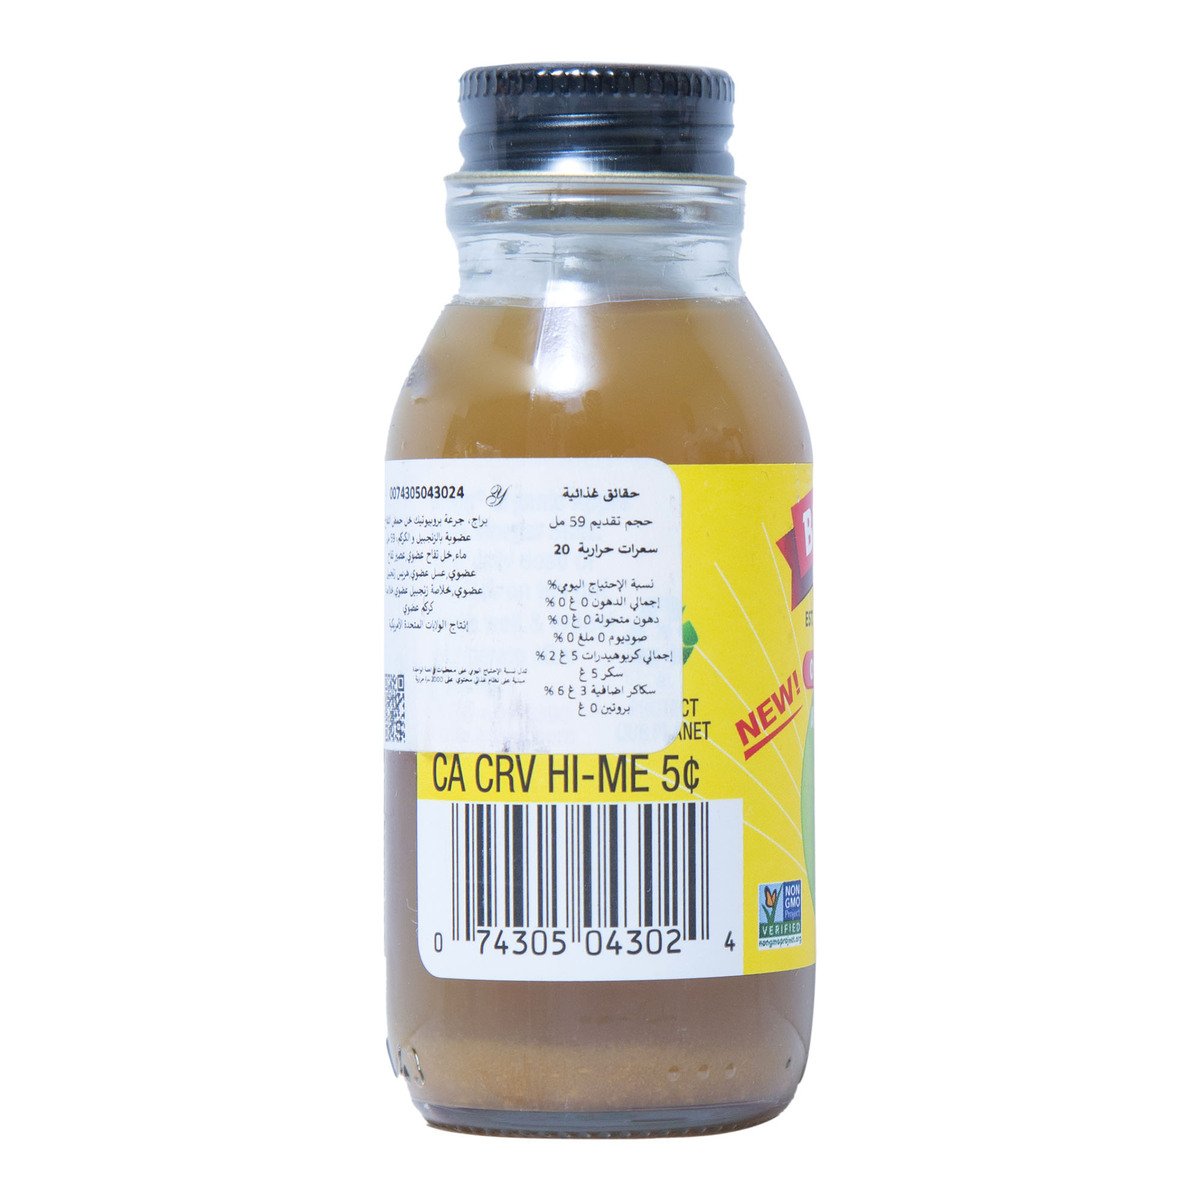 Bragg Organic Apple Cider Vinegar Ginger Turmeric Shot 59 ml